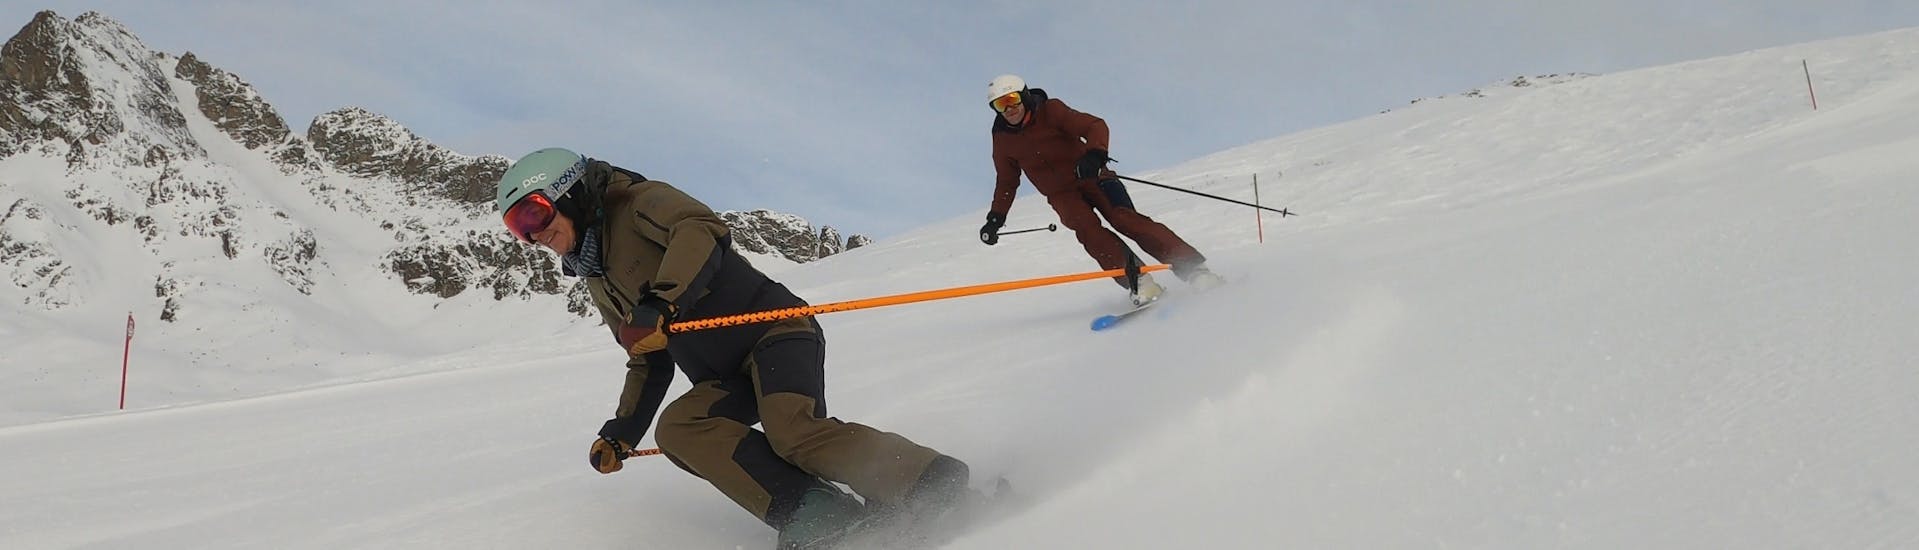 Privater Skikurs für Erwachsene aller Levels.